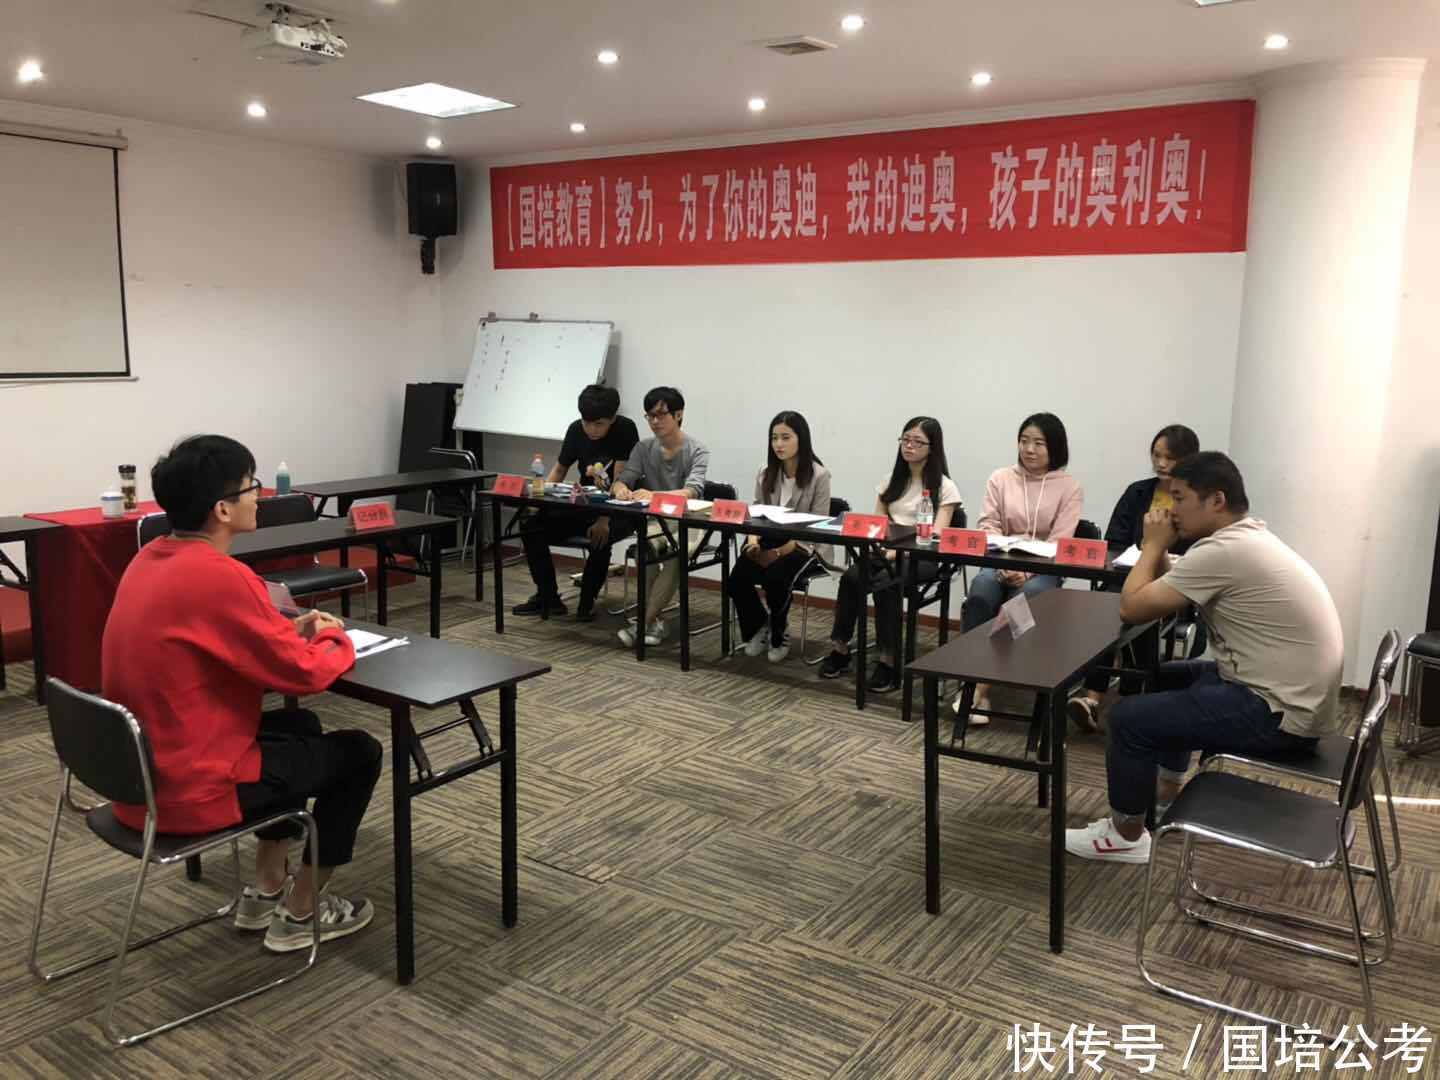 国培-2018年河南省公务员考试面试技巧:加强审